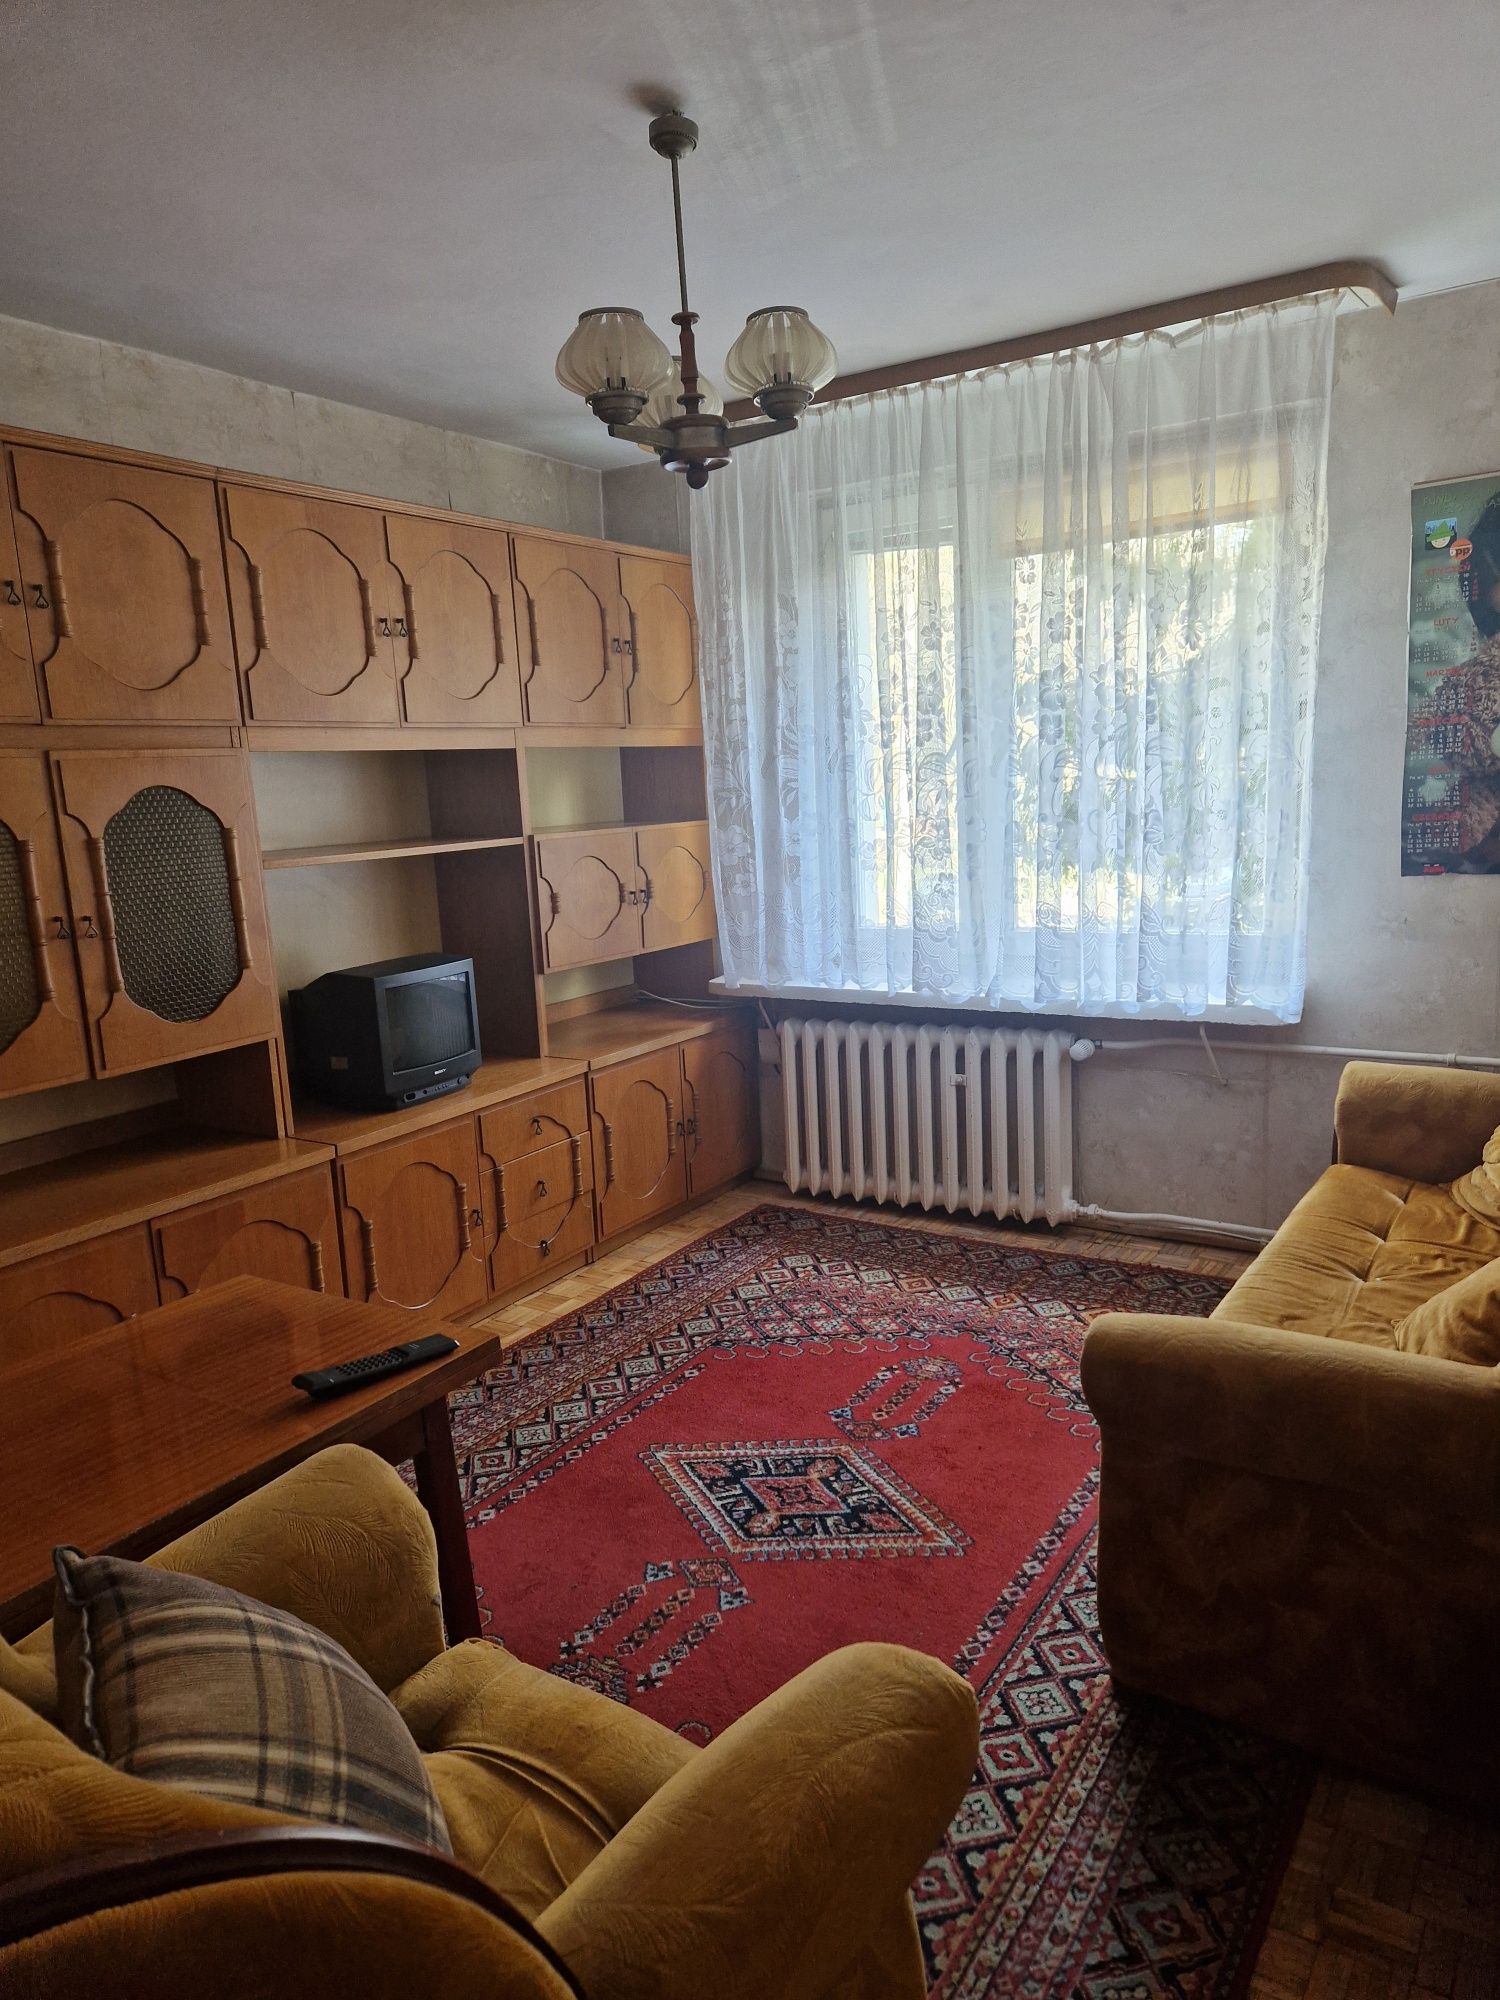 Sprzedam mieszkanie Gdańsk Złota Karczma/Matarnia 2 pokoje 399tys